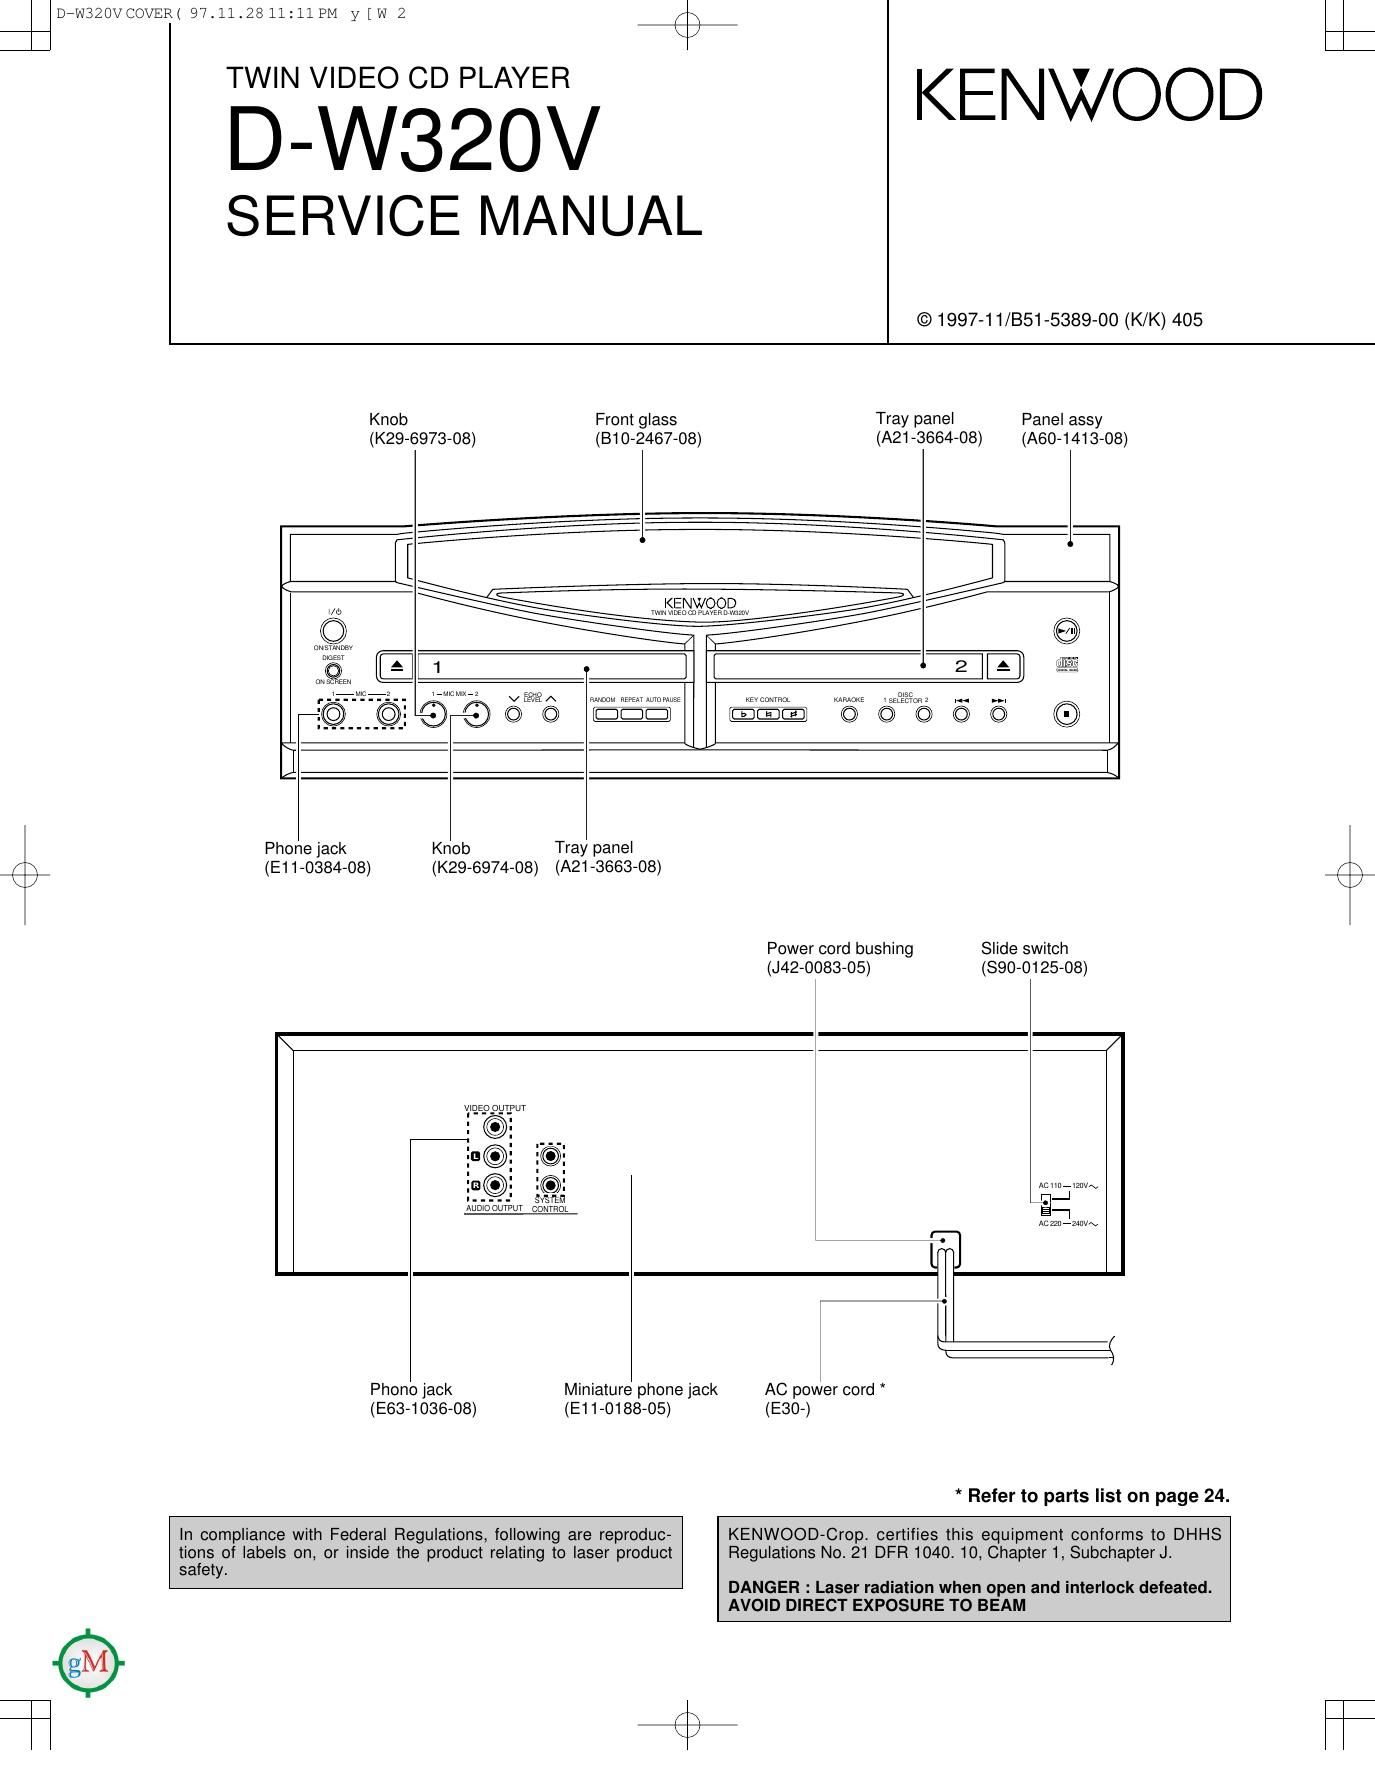 Kenwood DW 320 V Service Manual